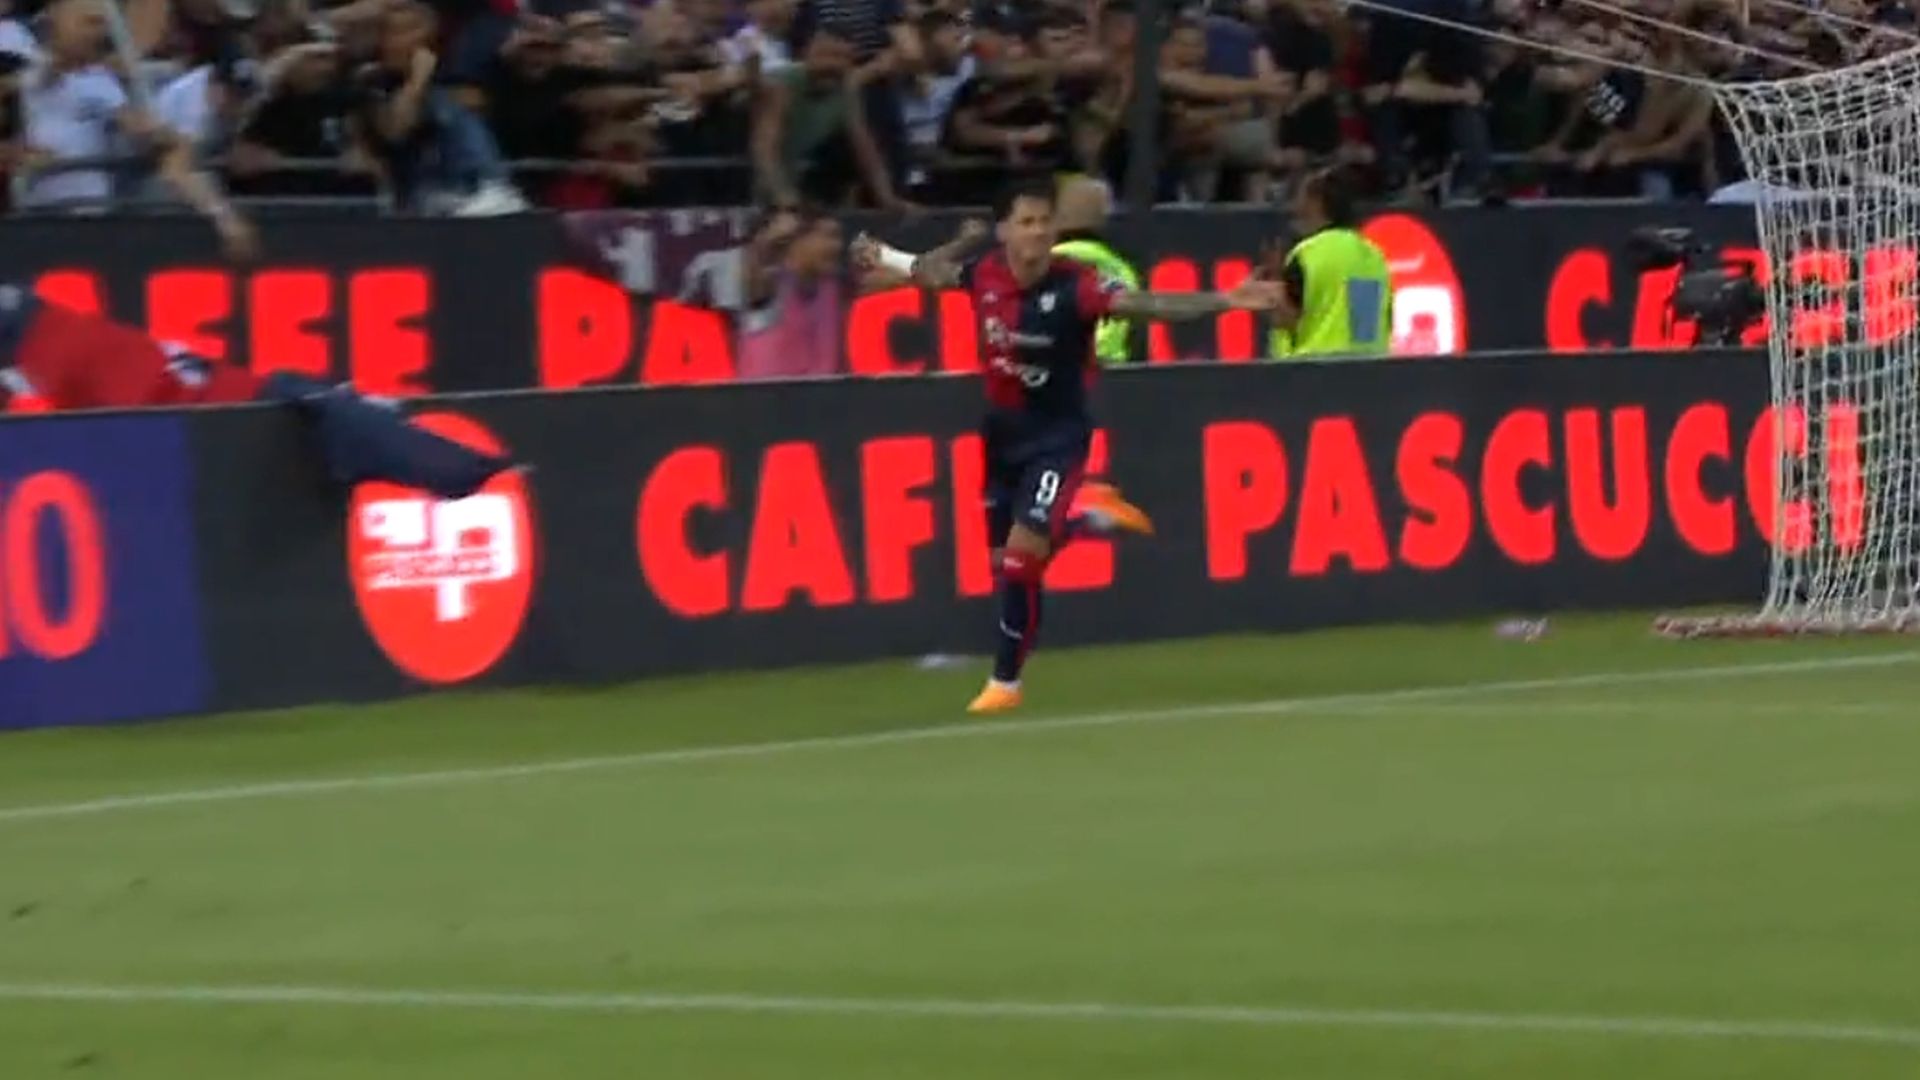 Golazo de Gianluca Lapadula con exquisito cabezazo en el Cagliari vs Bari por la final del ascenso a Serie A